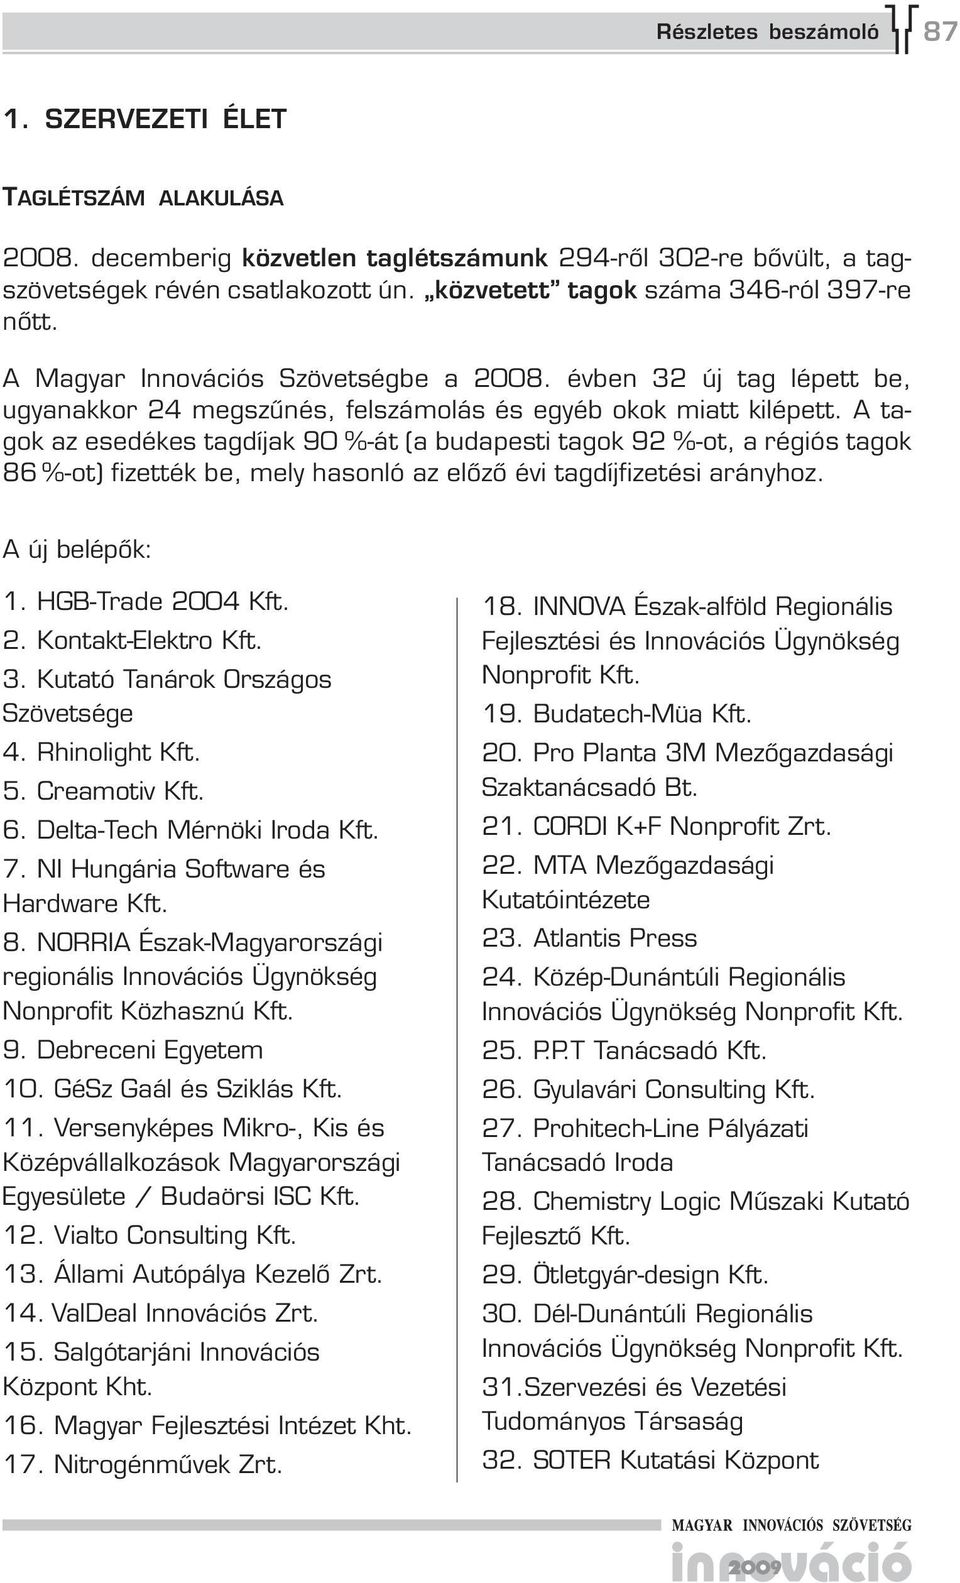 A tagok az esedékes tagdíjak 0 %-át (a budapesti tagok 2 %-ot, a régiós tagok 86 %-ot) fizették be, mely hasonló az előző évi tagdíjfizetési arányhoz. A új belépők: 1. HGB-Trade 2004 Kft. 2. Kontakt-Elektro Kft.